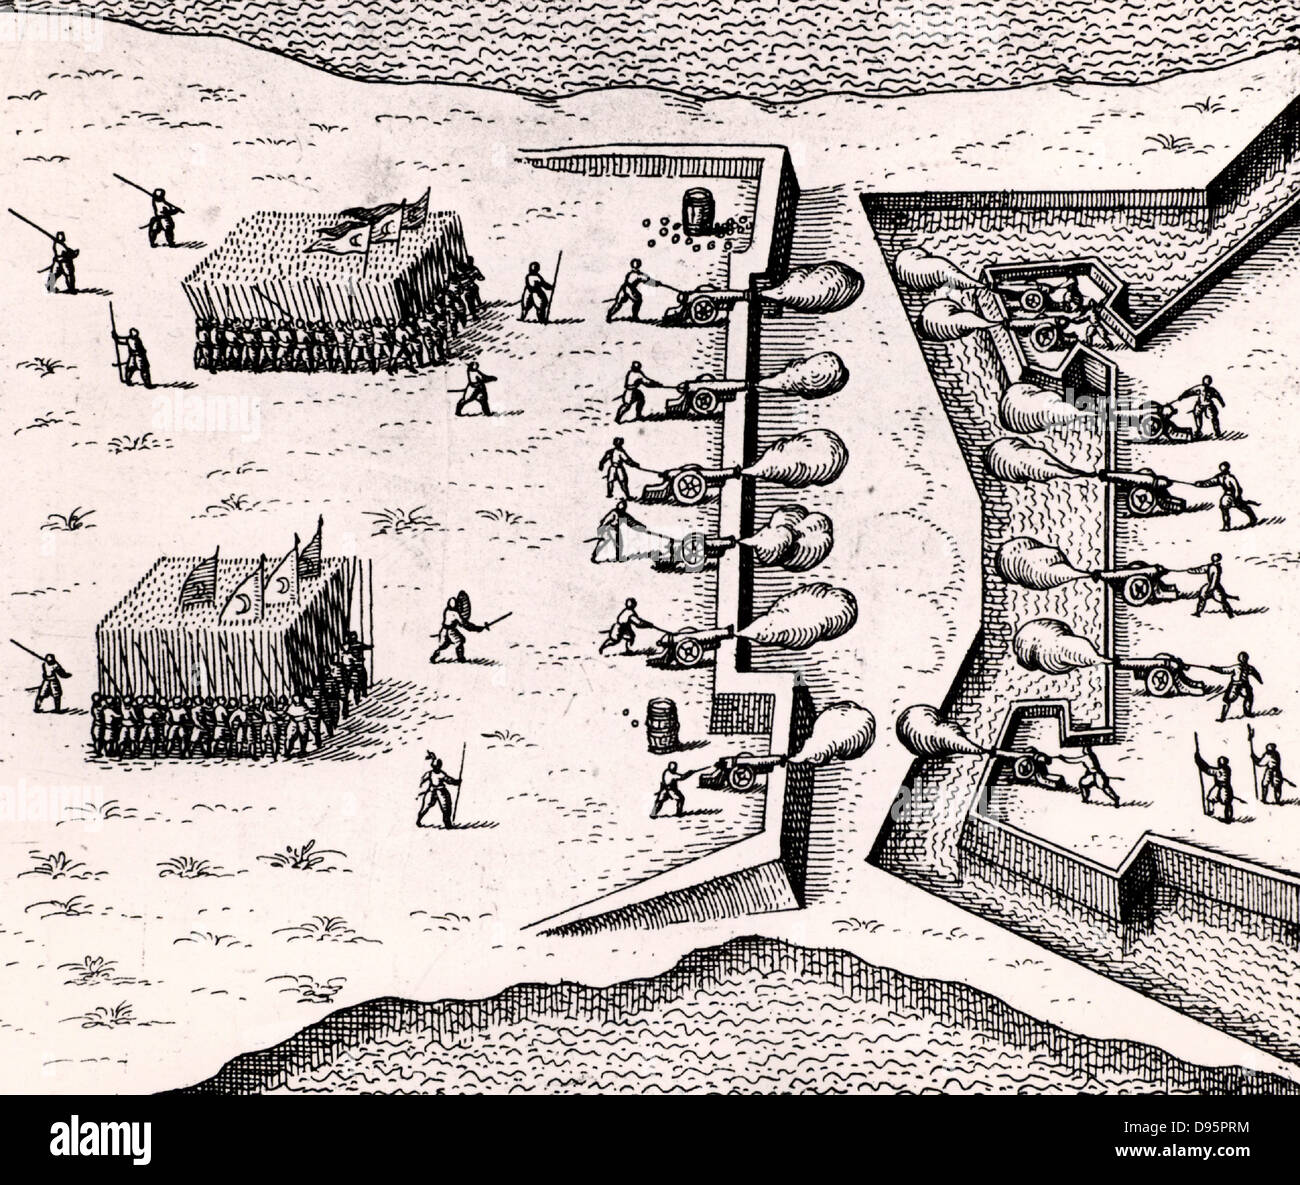 Die türkischen Streitkräfte, Links, Angriff auf eine Festung. Gruppen von pikenieren stehen in Bereitschaft warten auf die Artillerie, die Befestigungen zu beschädigen. Gravur von "Utriusque cosmi? Historia" von Robert Fludd (Oppenheim, 1617-1619). Stockfoto